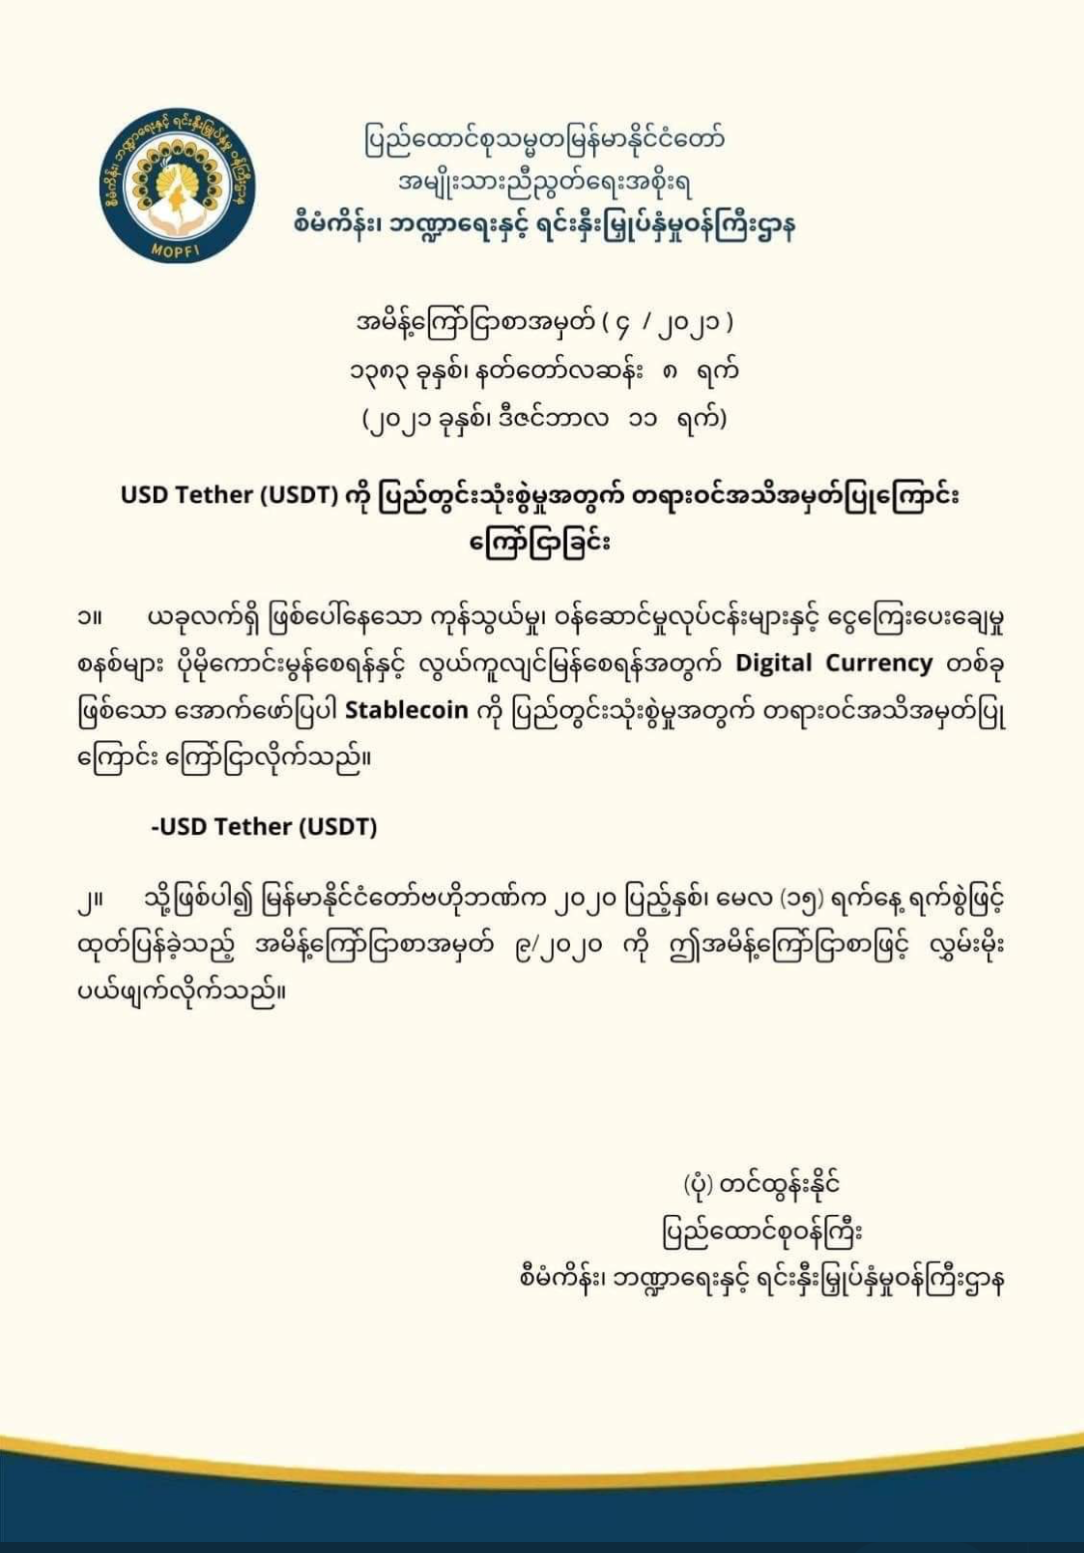 El gobierno de Myanmar en el exilio 'reconoce oficialmente' el uso del USDT